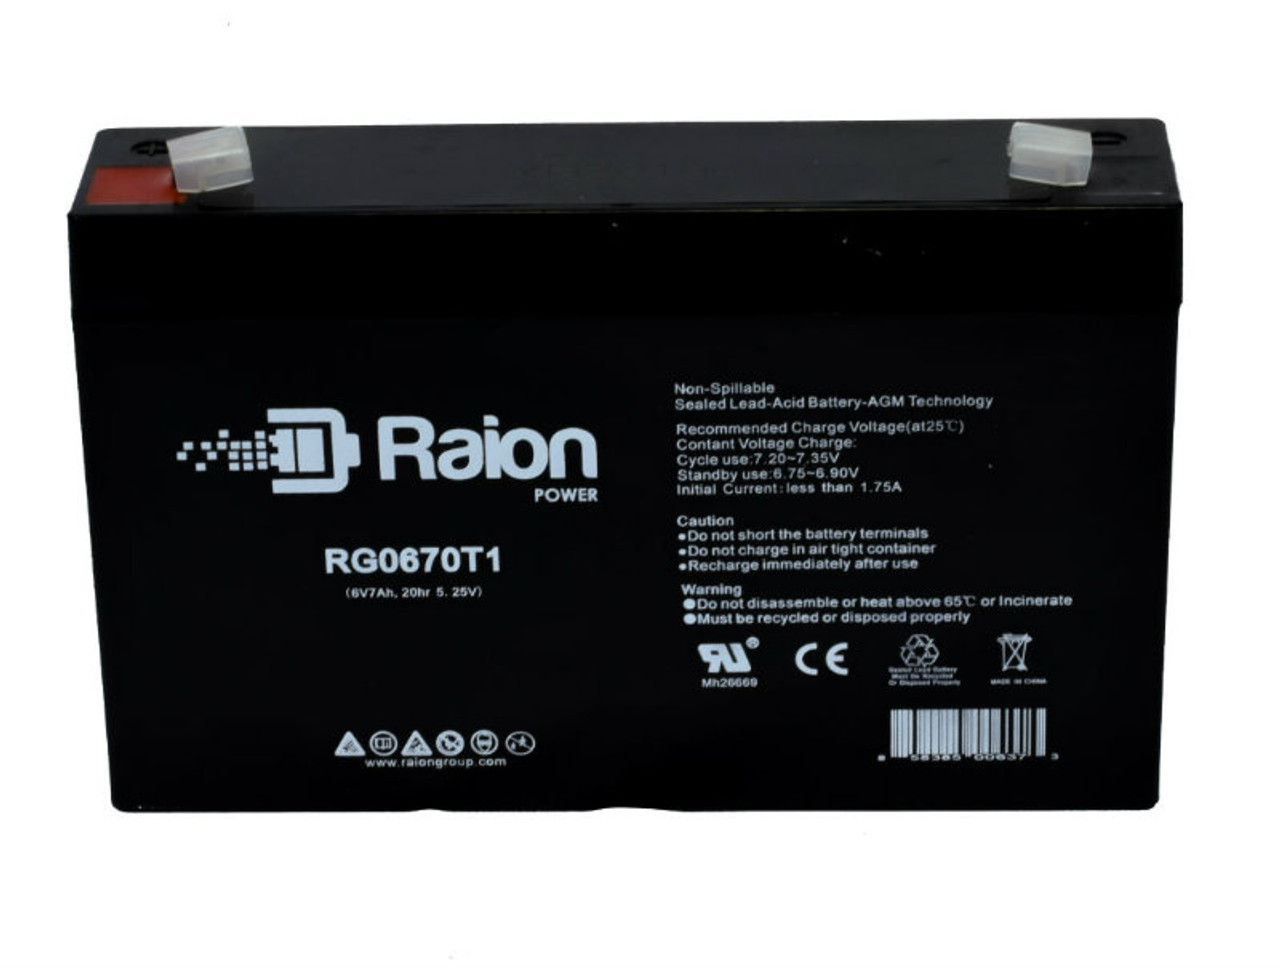 Raion Power RG0670T1 SLA Battery for Exell EB670 OEM Battery